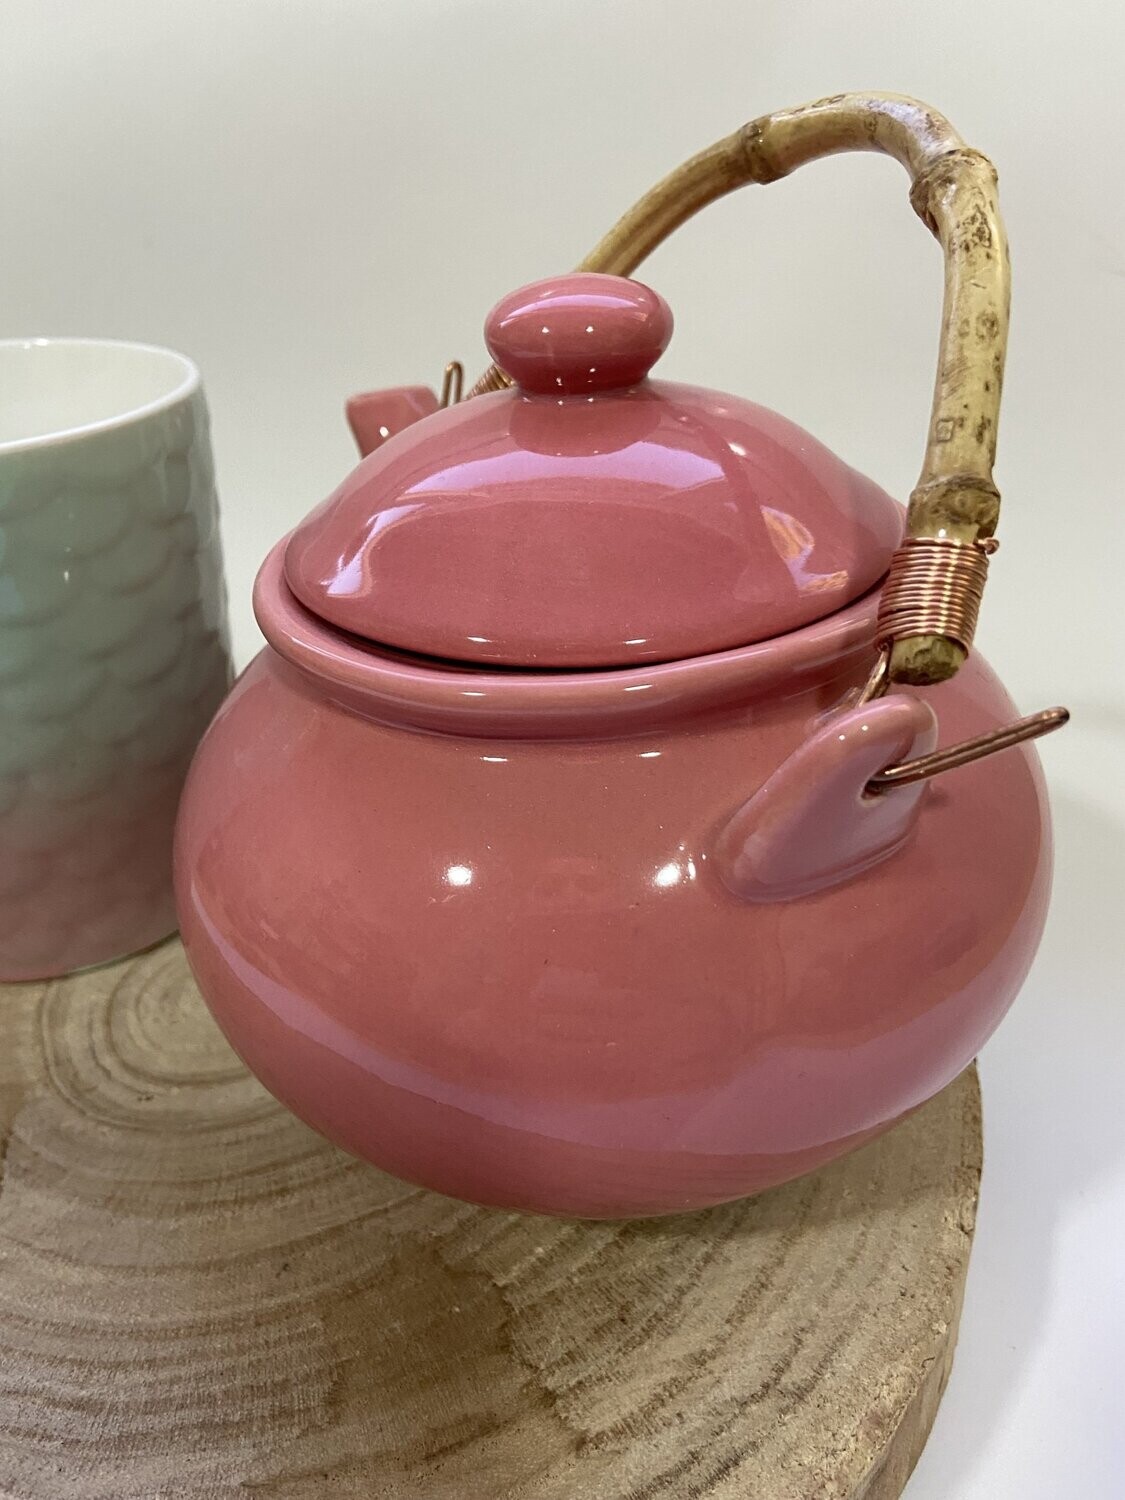 Juego de té Sirena - 1 taza + tetera con asa bambú